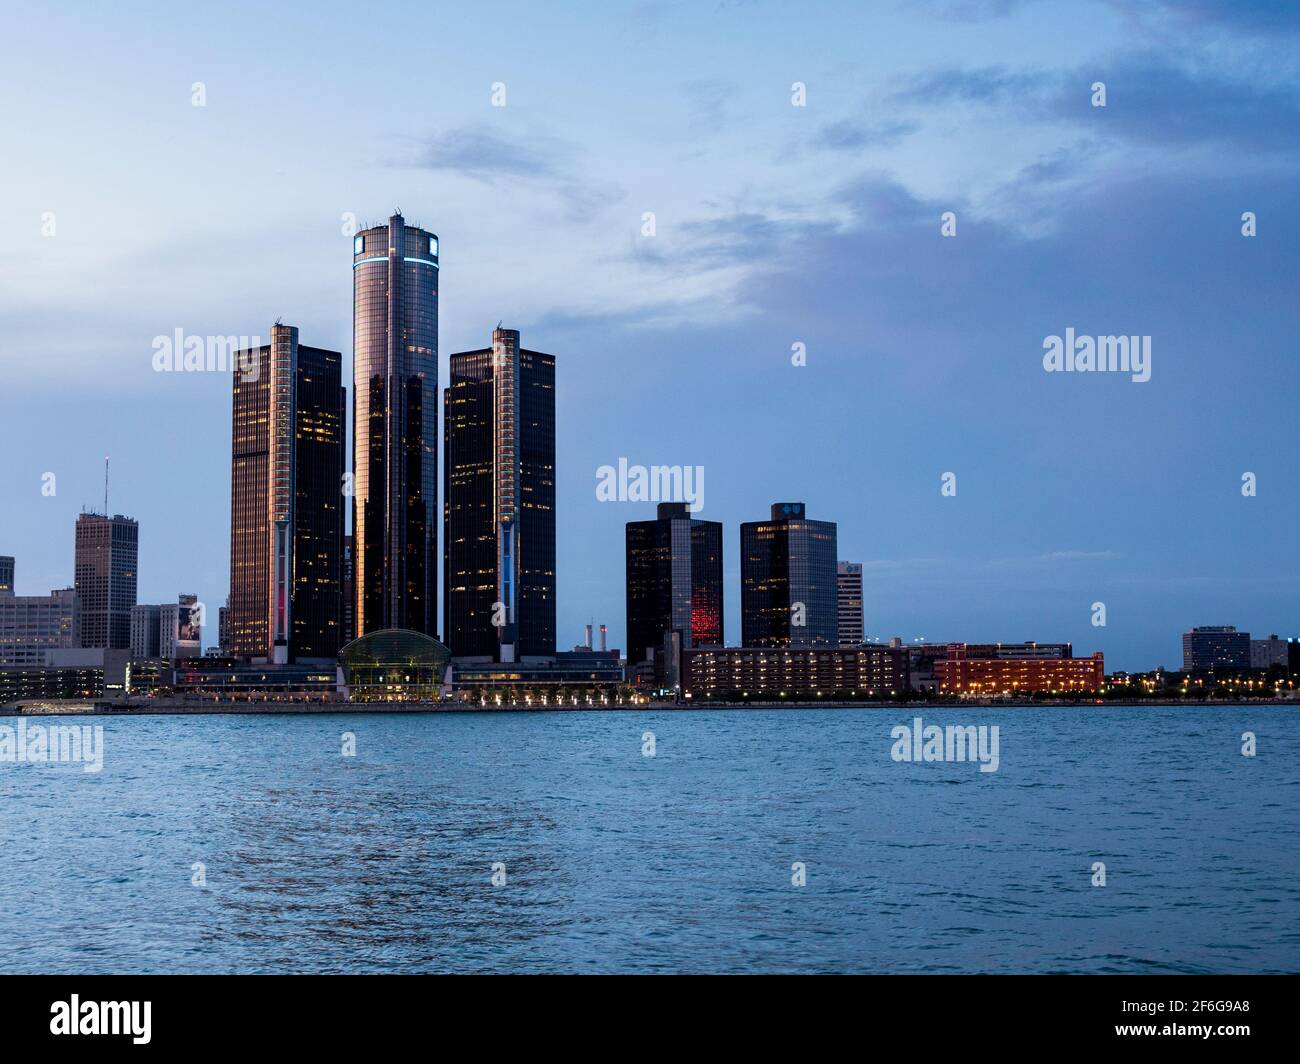 Après la lueur sur le Renaissance Centre dans le centre-ville de Detroit Michigan: Après le soleil pose les hauts bâtiments du Renaissance Centre dominés par la tour GM à Detroit commencent à s'allumer. Rivière Detroit en premier plan. Banque D'Images